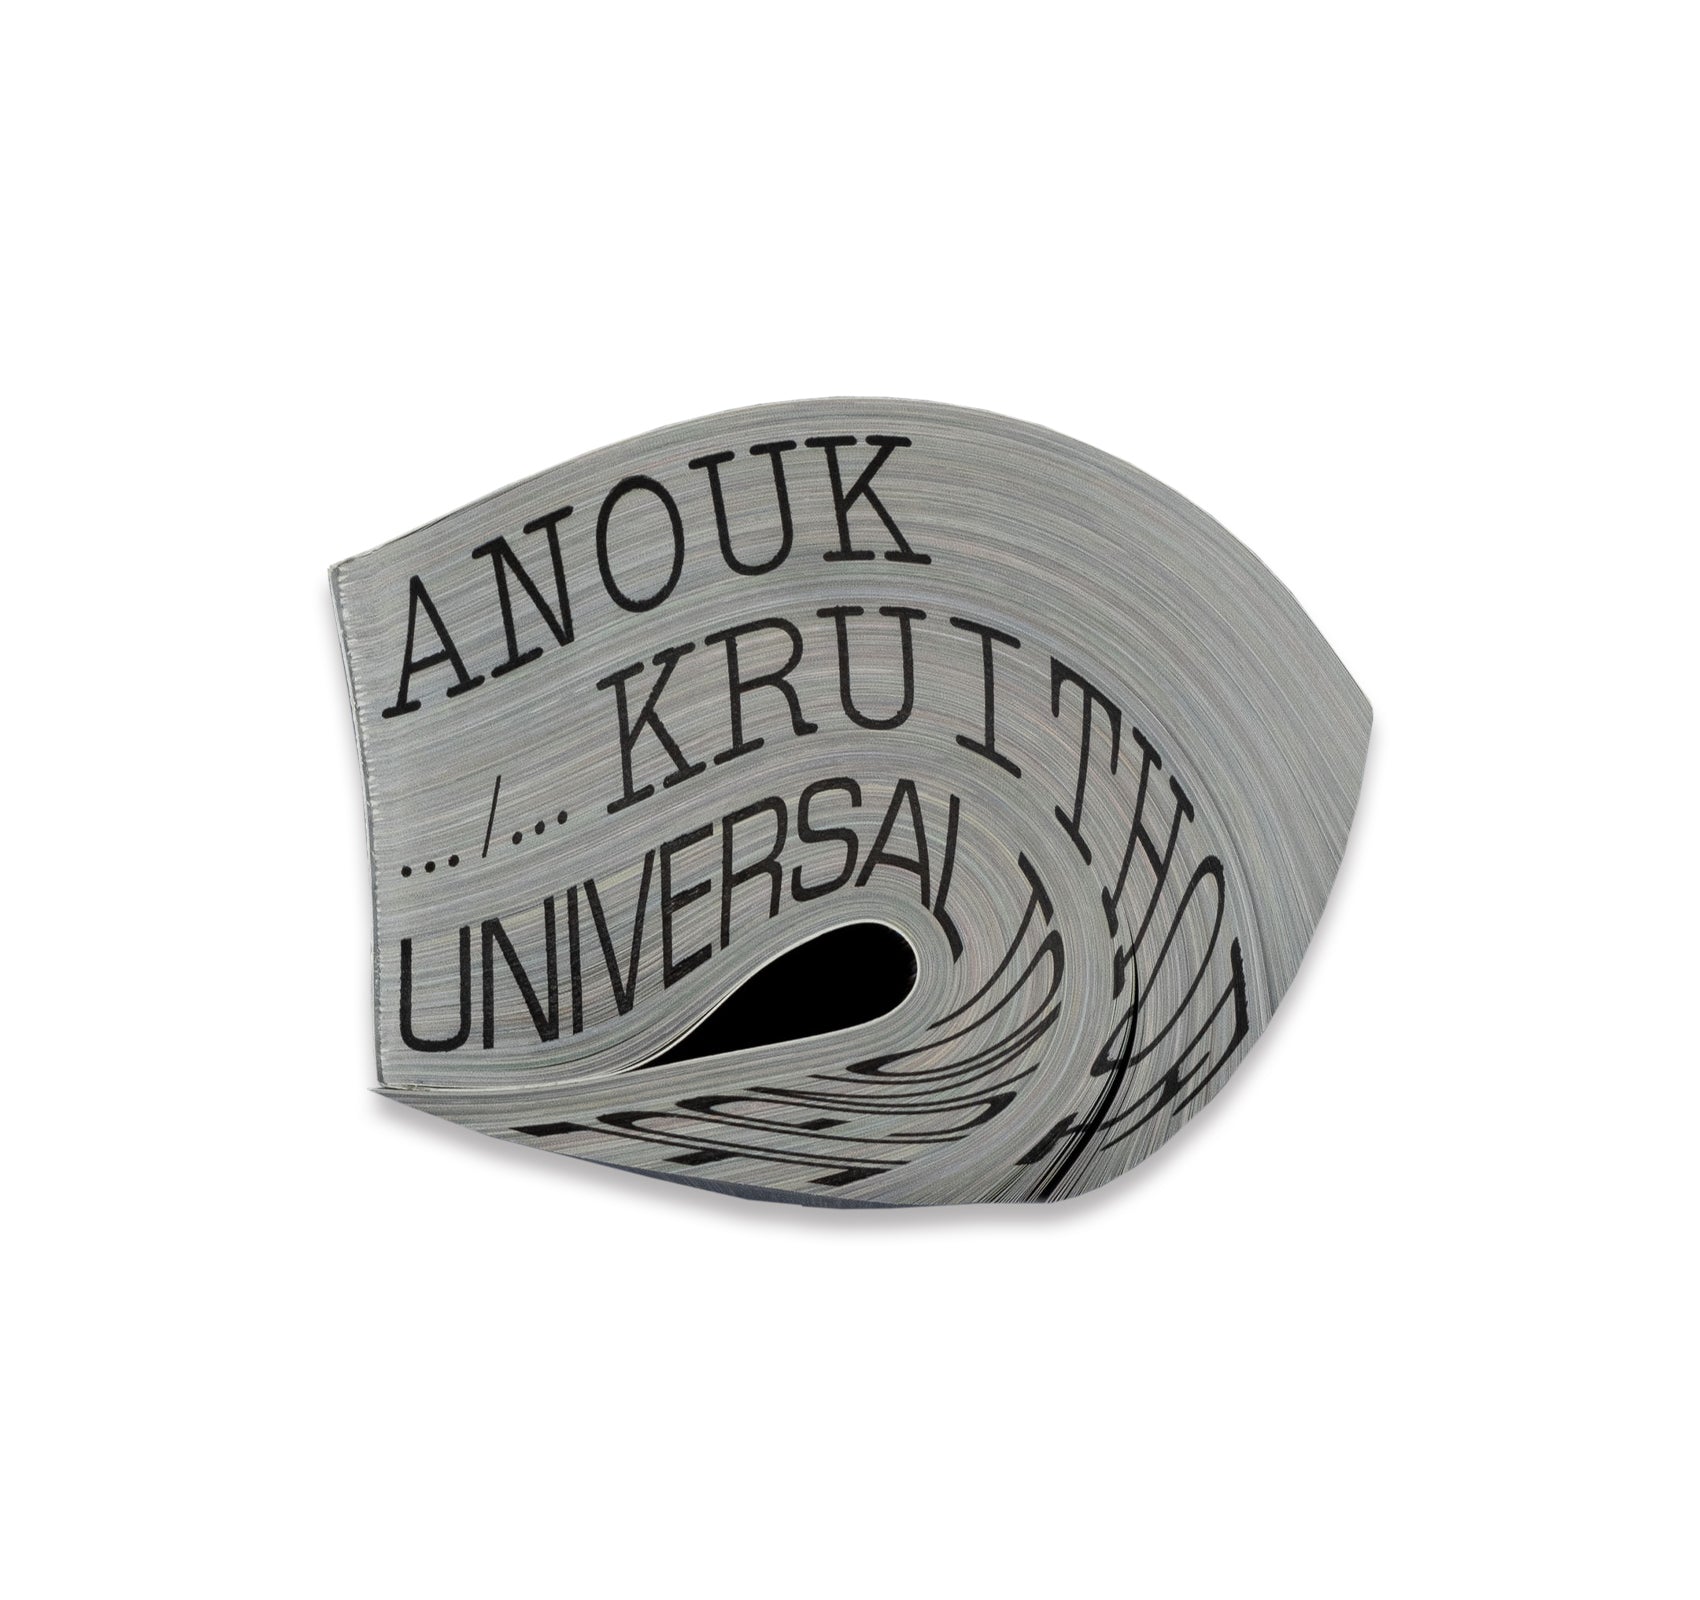 UNIVERSAL TONGUE by Anouk Kruithof